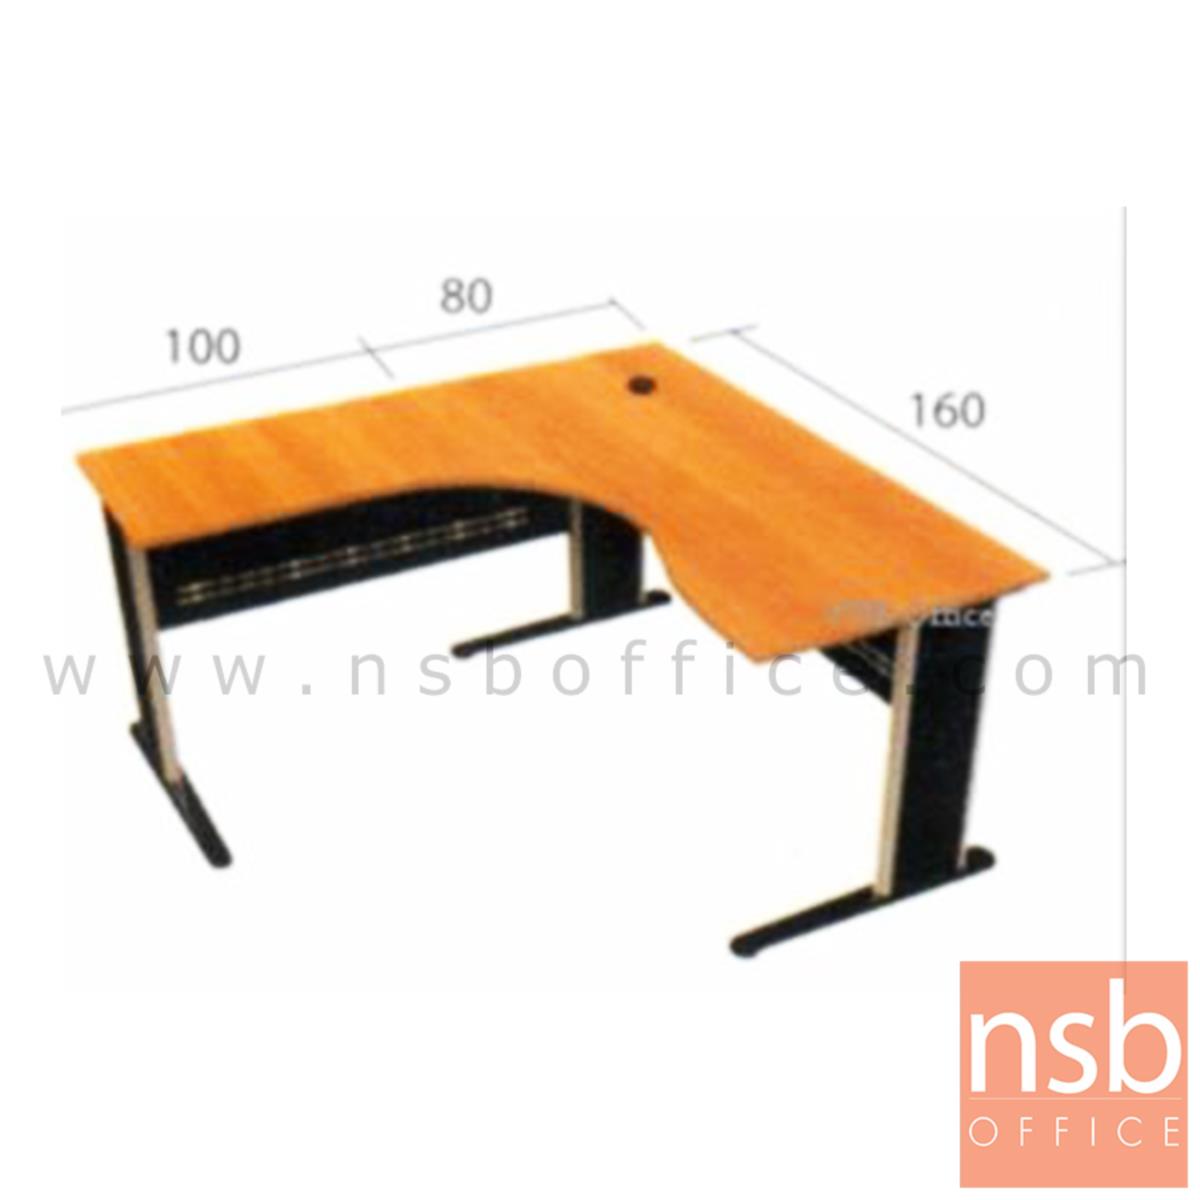 โต๊ะผู้บริหารตัวแอลหน้าโค้งเว้า  รุ่น Andorian ขนาด 160W1 ,180W1*180W2 cm.  ขาเหล็ก